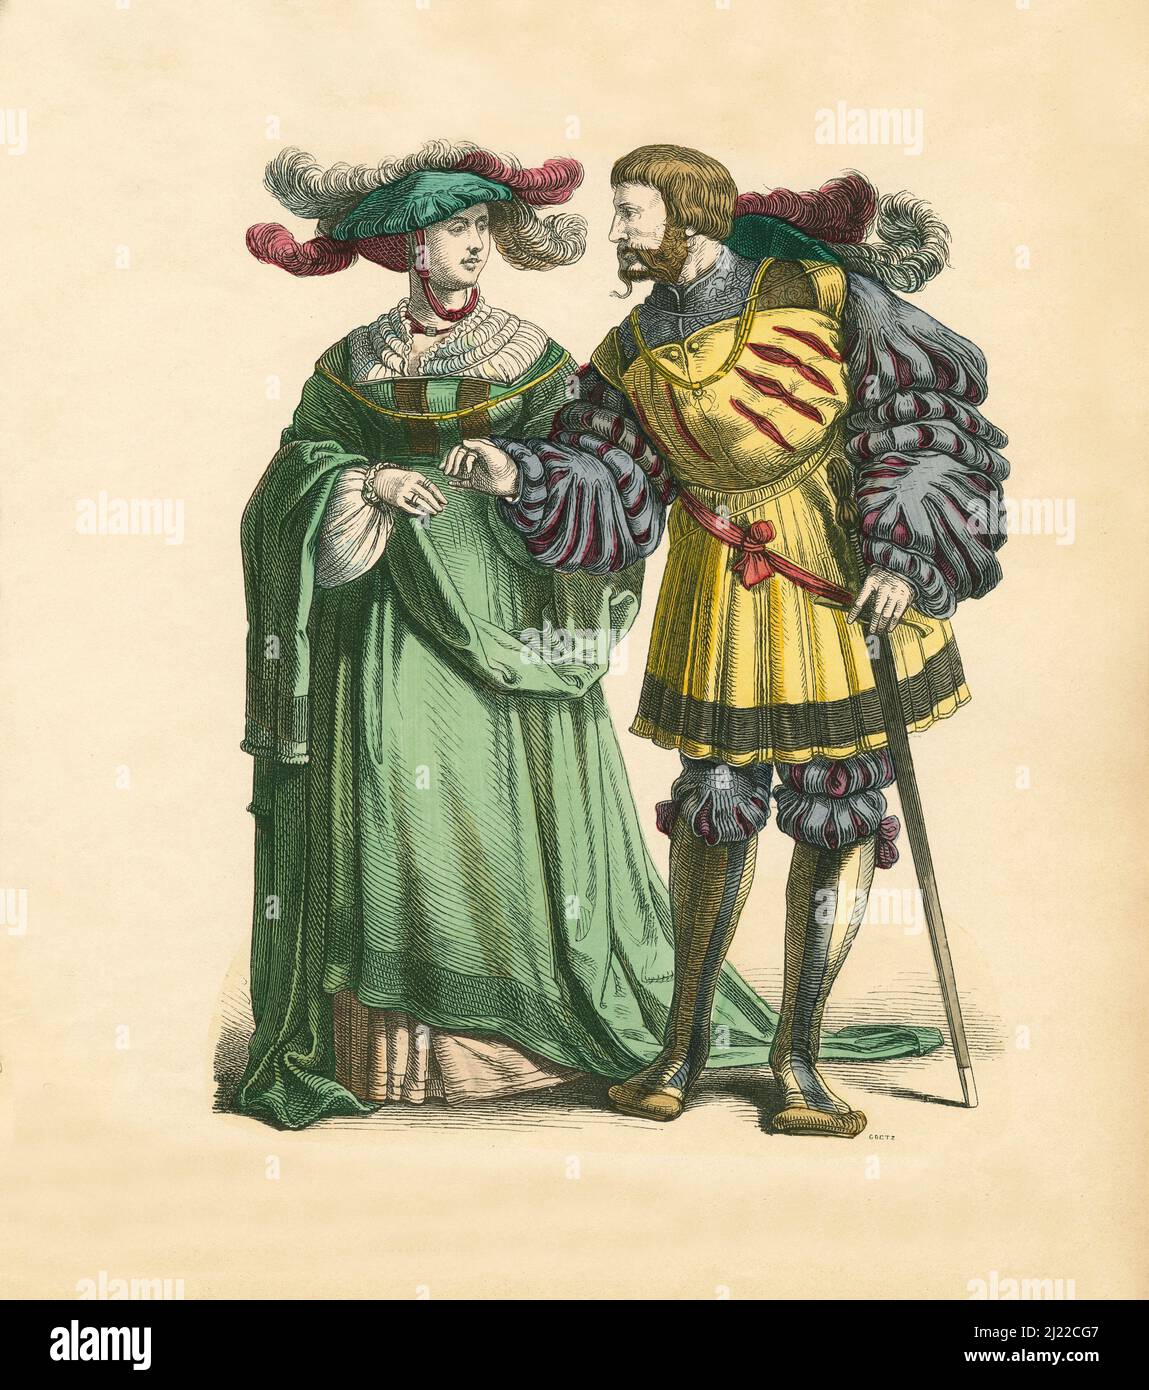 Couple allemand, premier tiers du 16th siècle, Illustration, l'histoire du costume, Braun & Schneider, Munich, Allemagne, 1861-1880 Banque D'Images